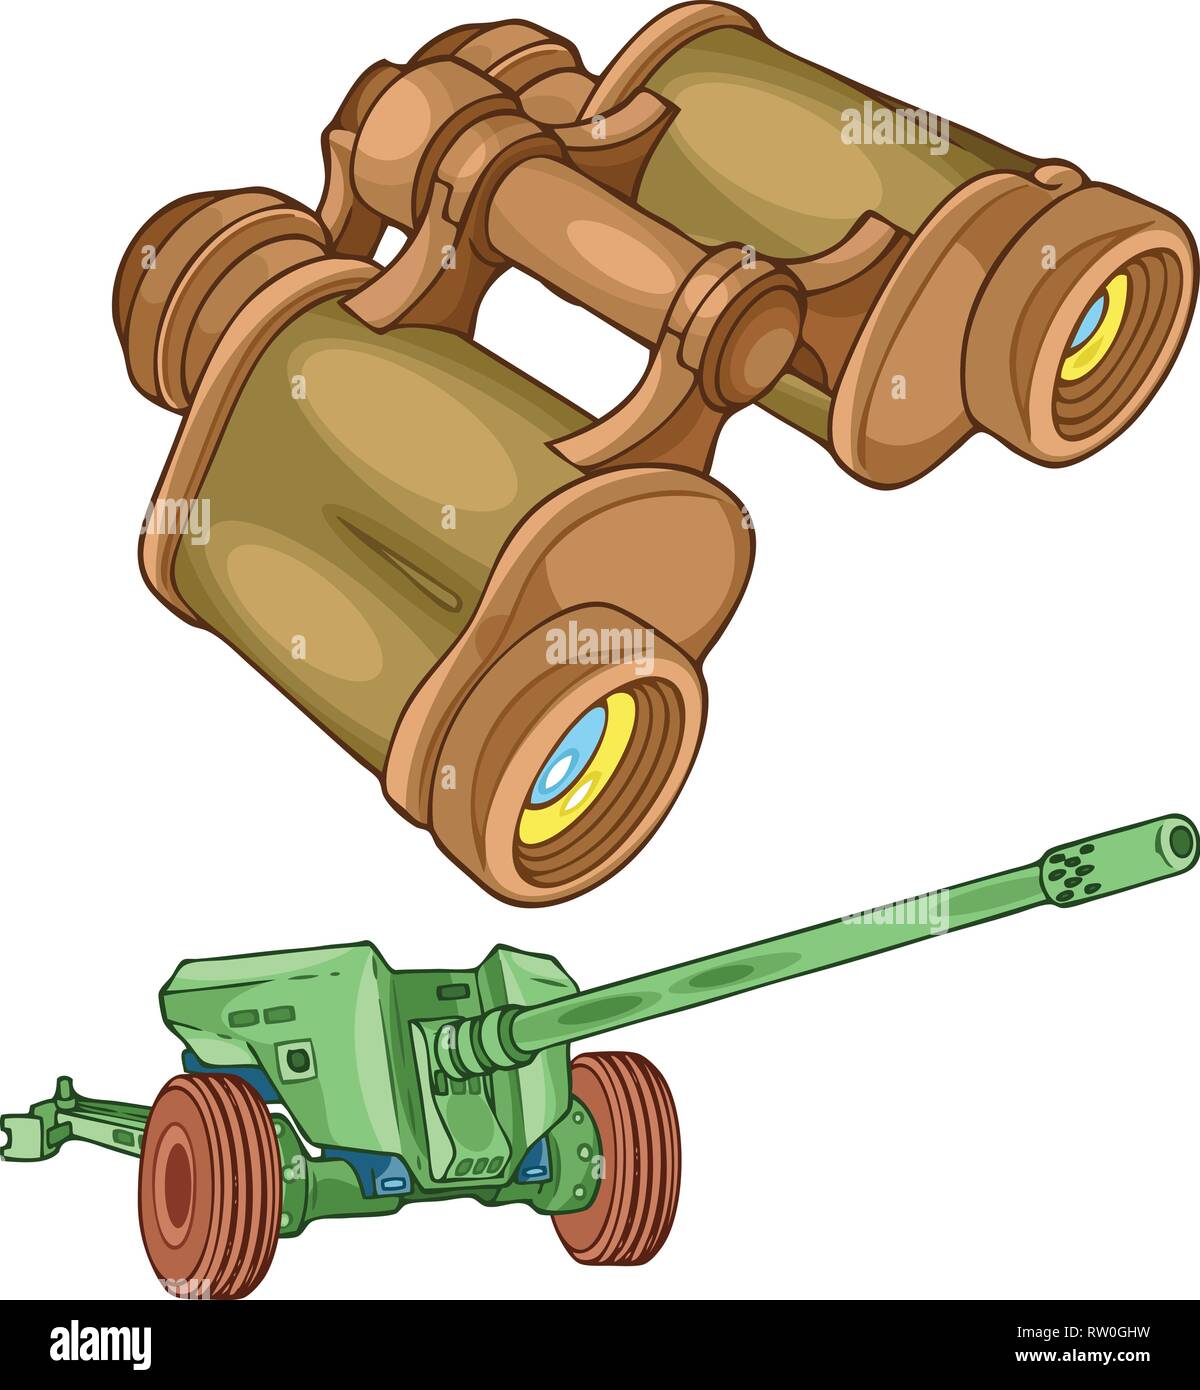 La ilustración muestra los militares prismáticos y pistola en capas separadas. Ilustración del Vector